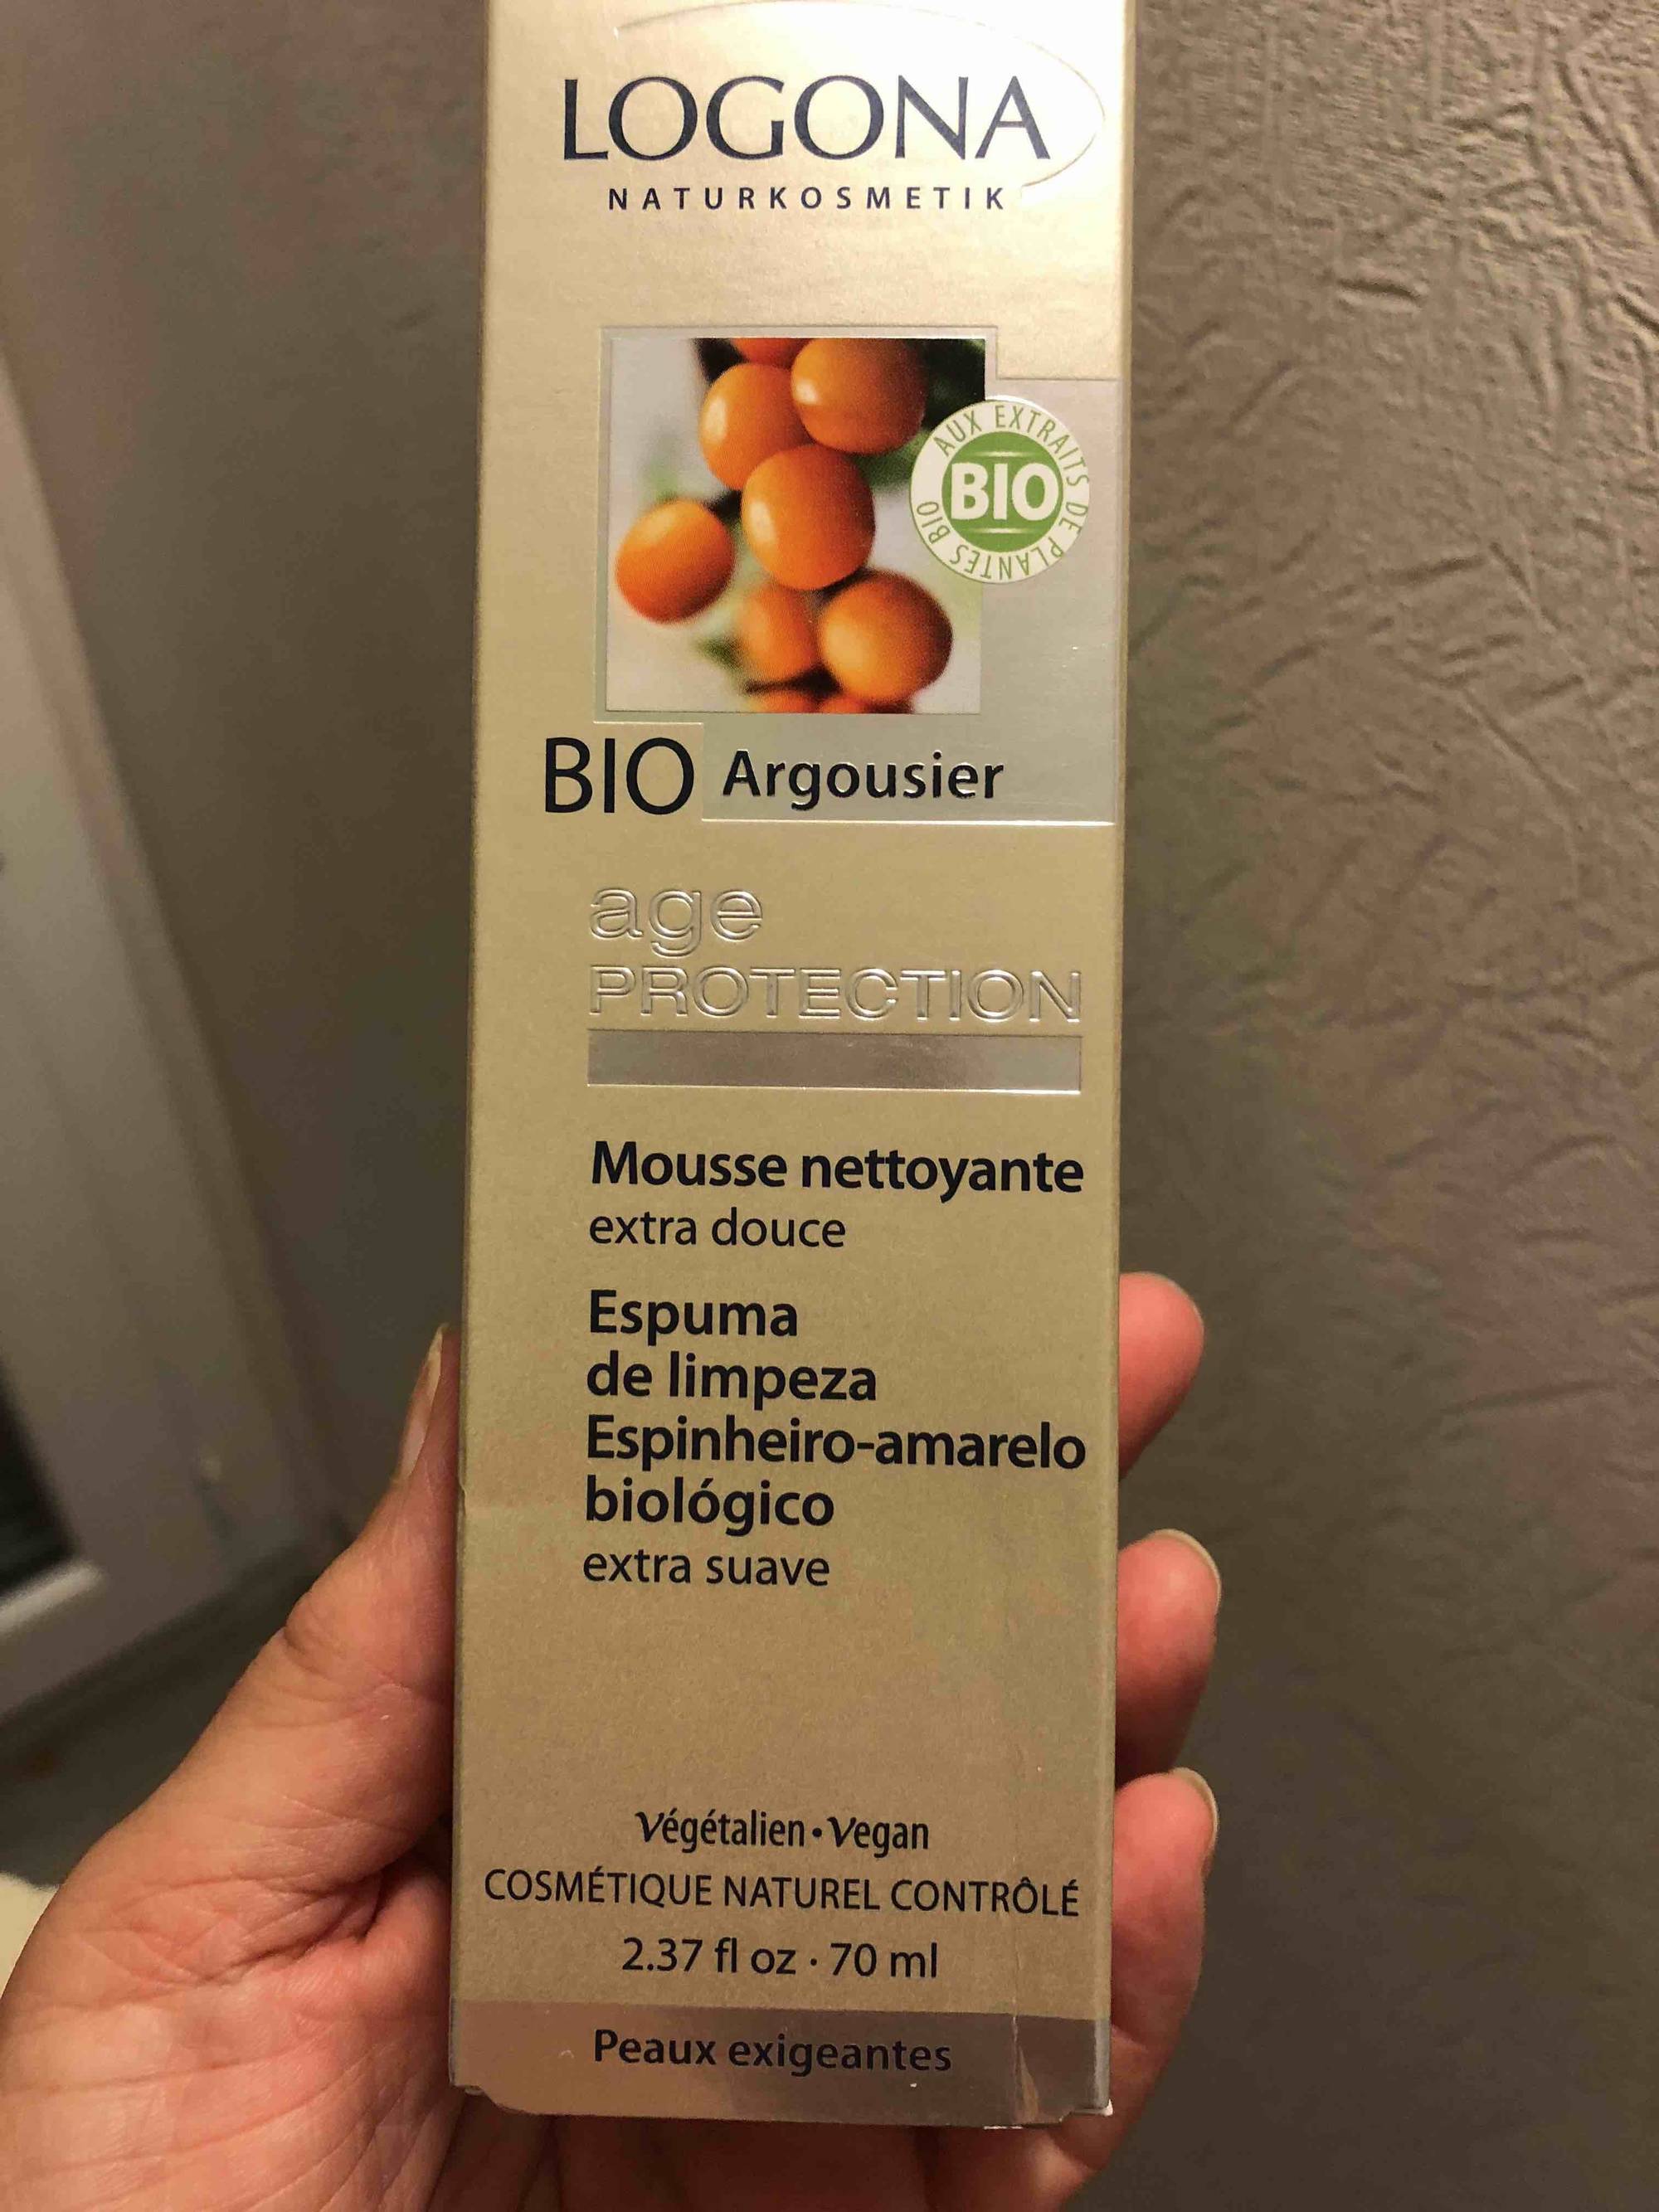 LOGONA - Bio argousier age protection - Mousse nettoyante